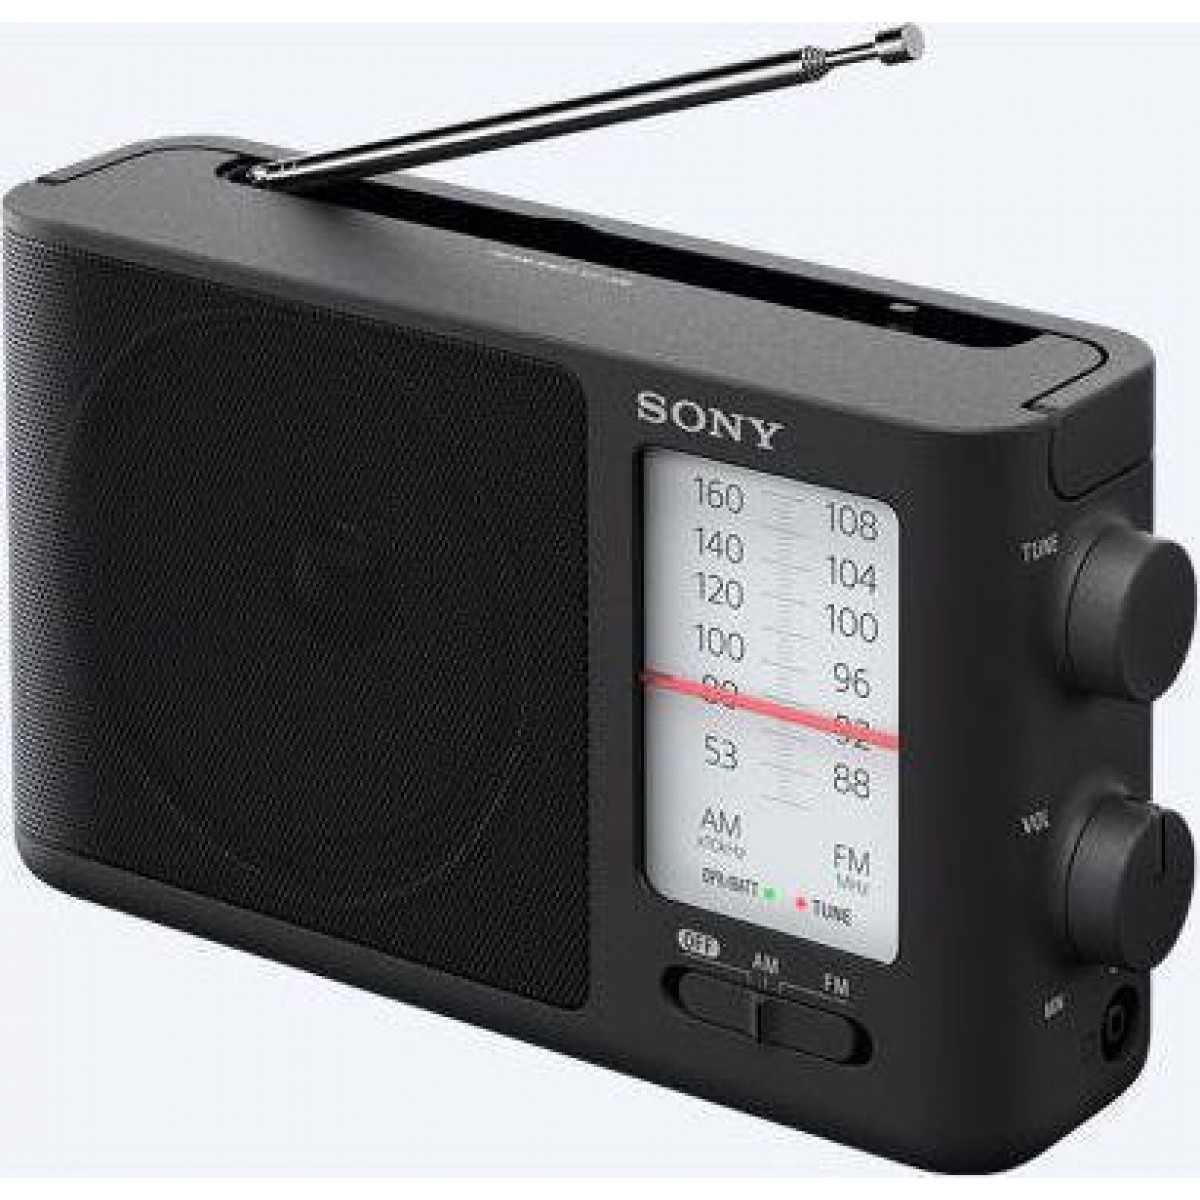 Φορητό ραδιόφωνο Sony ICF-506 Black